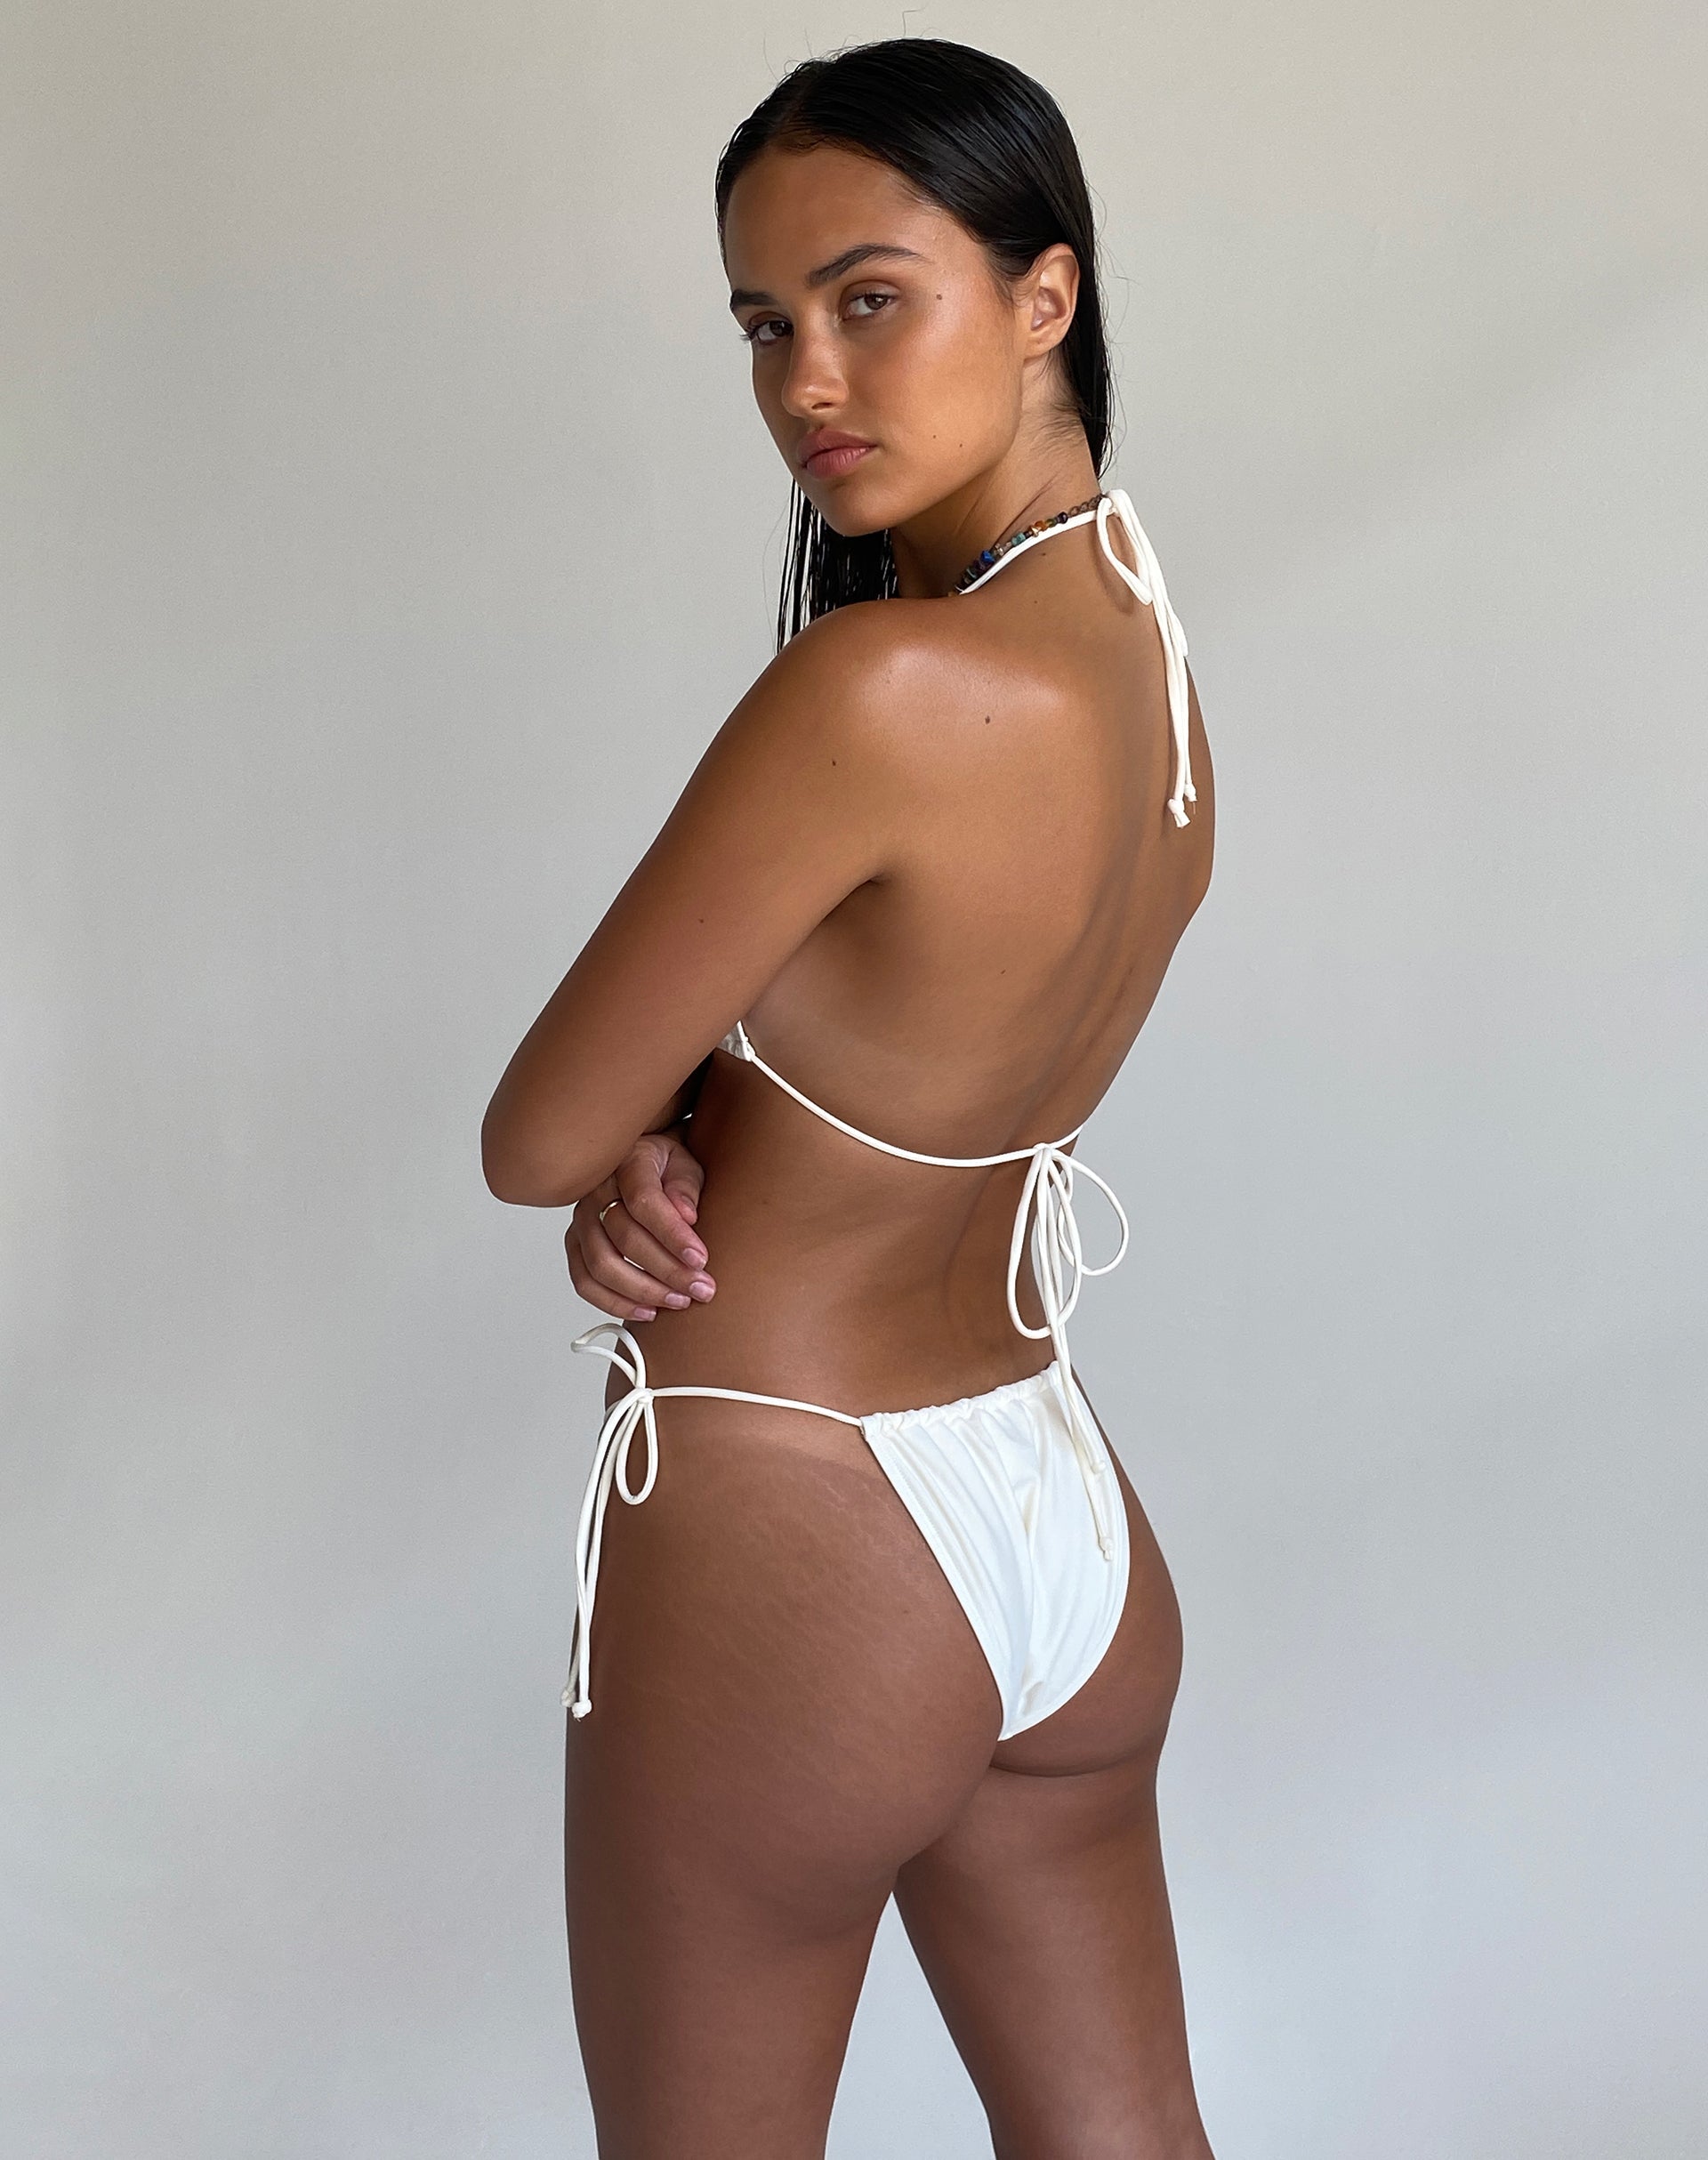 Imagen del sujetador de bikini Dolan en color crema